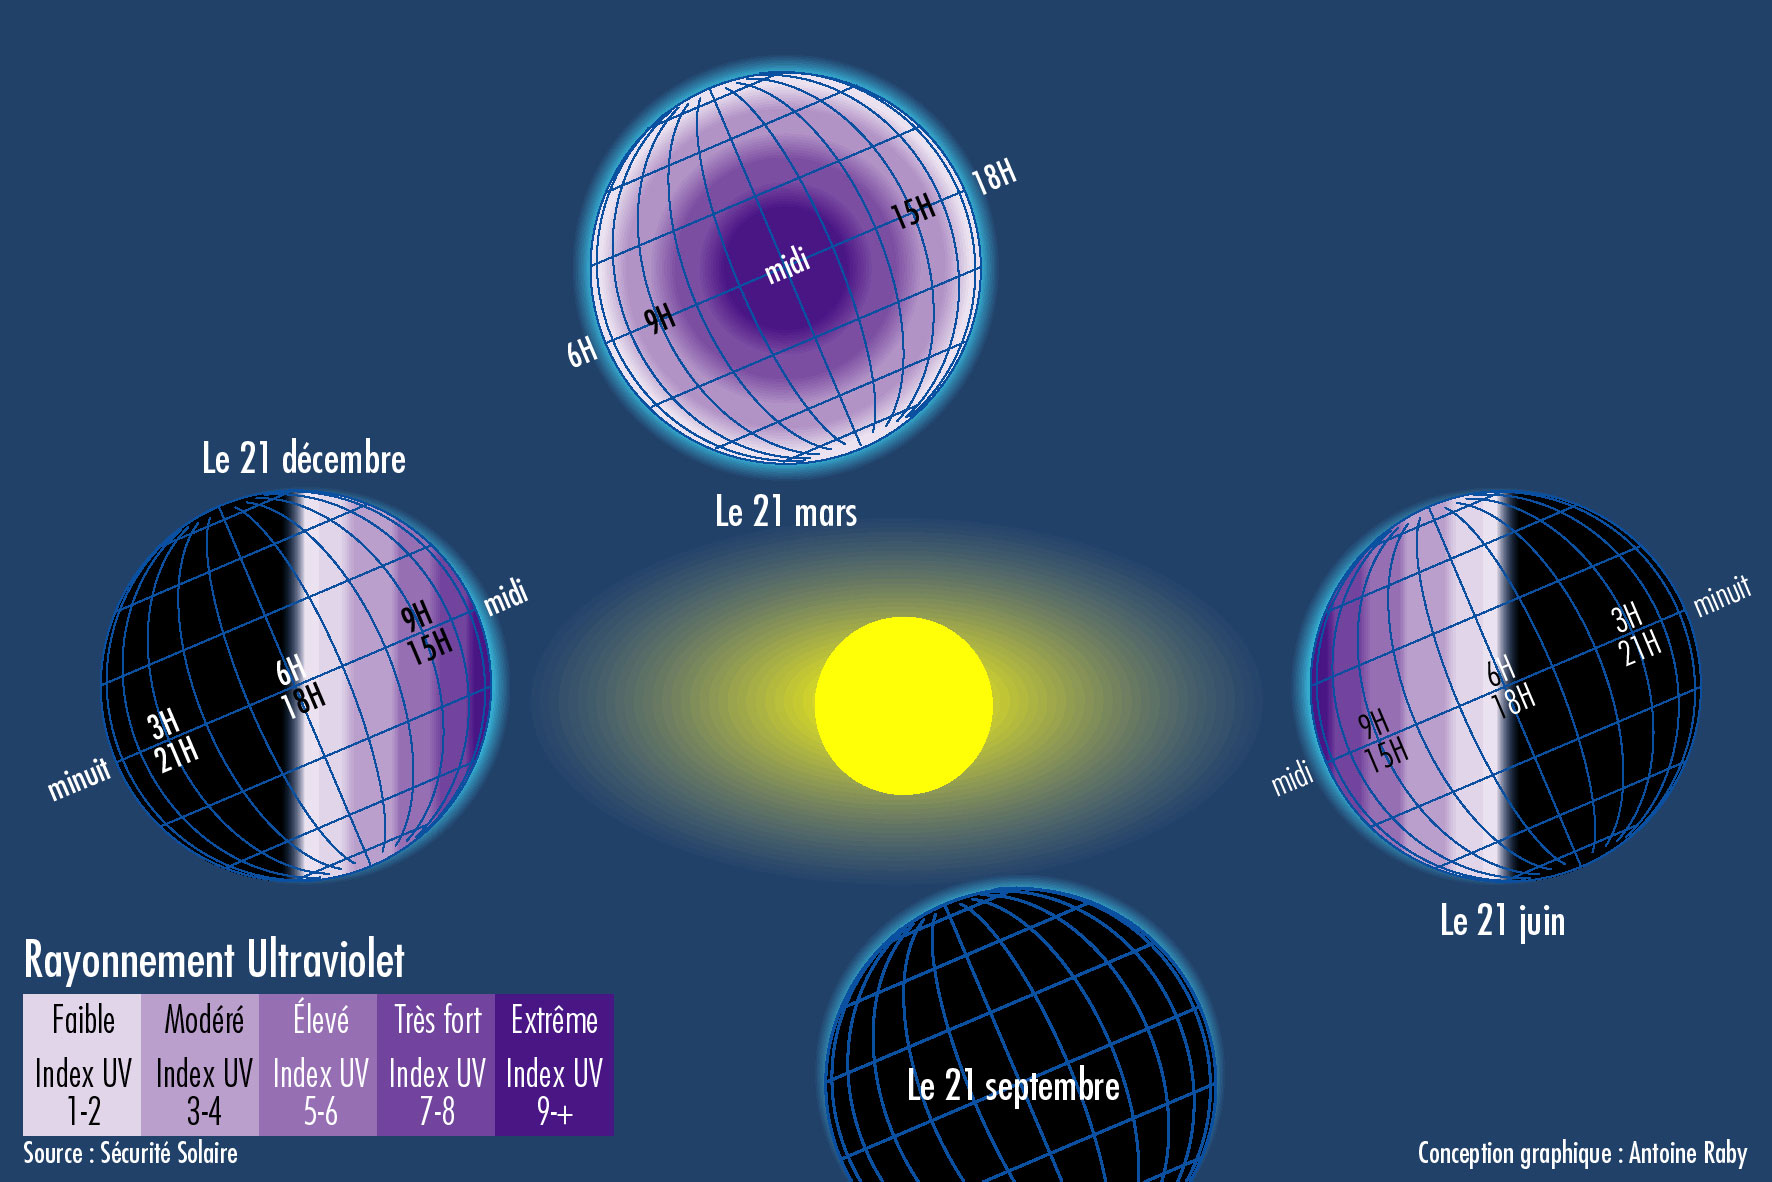 Schéma du rayonnement ultraviolet en fonction des saisons.